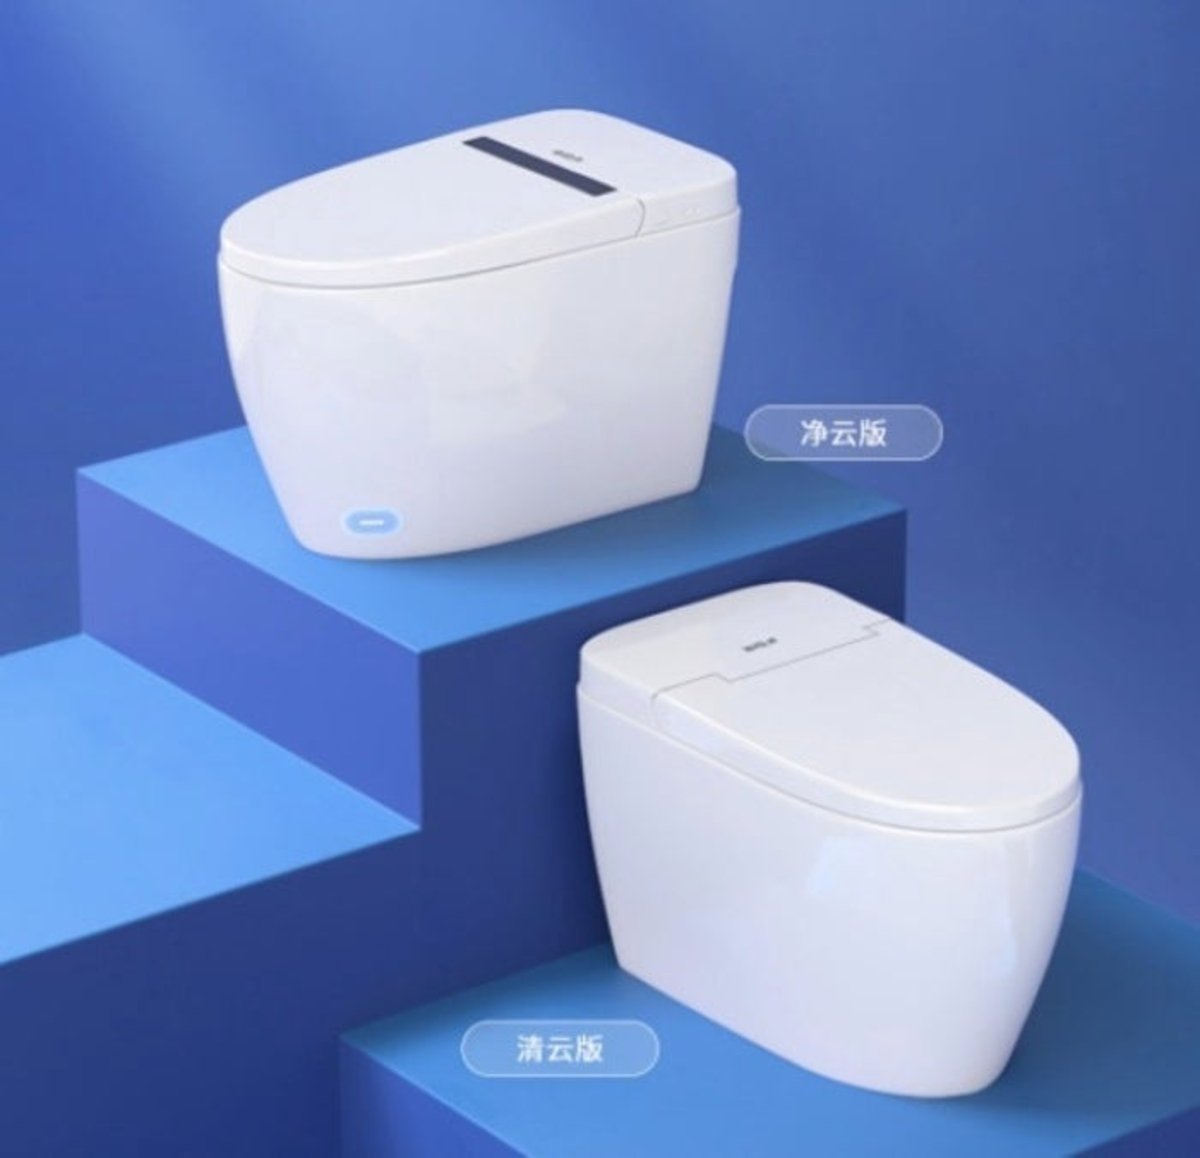 Xiaomi vende un inodoro anti-bacterias en el que no hace falta tirar de la cadena